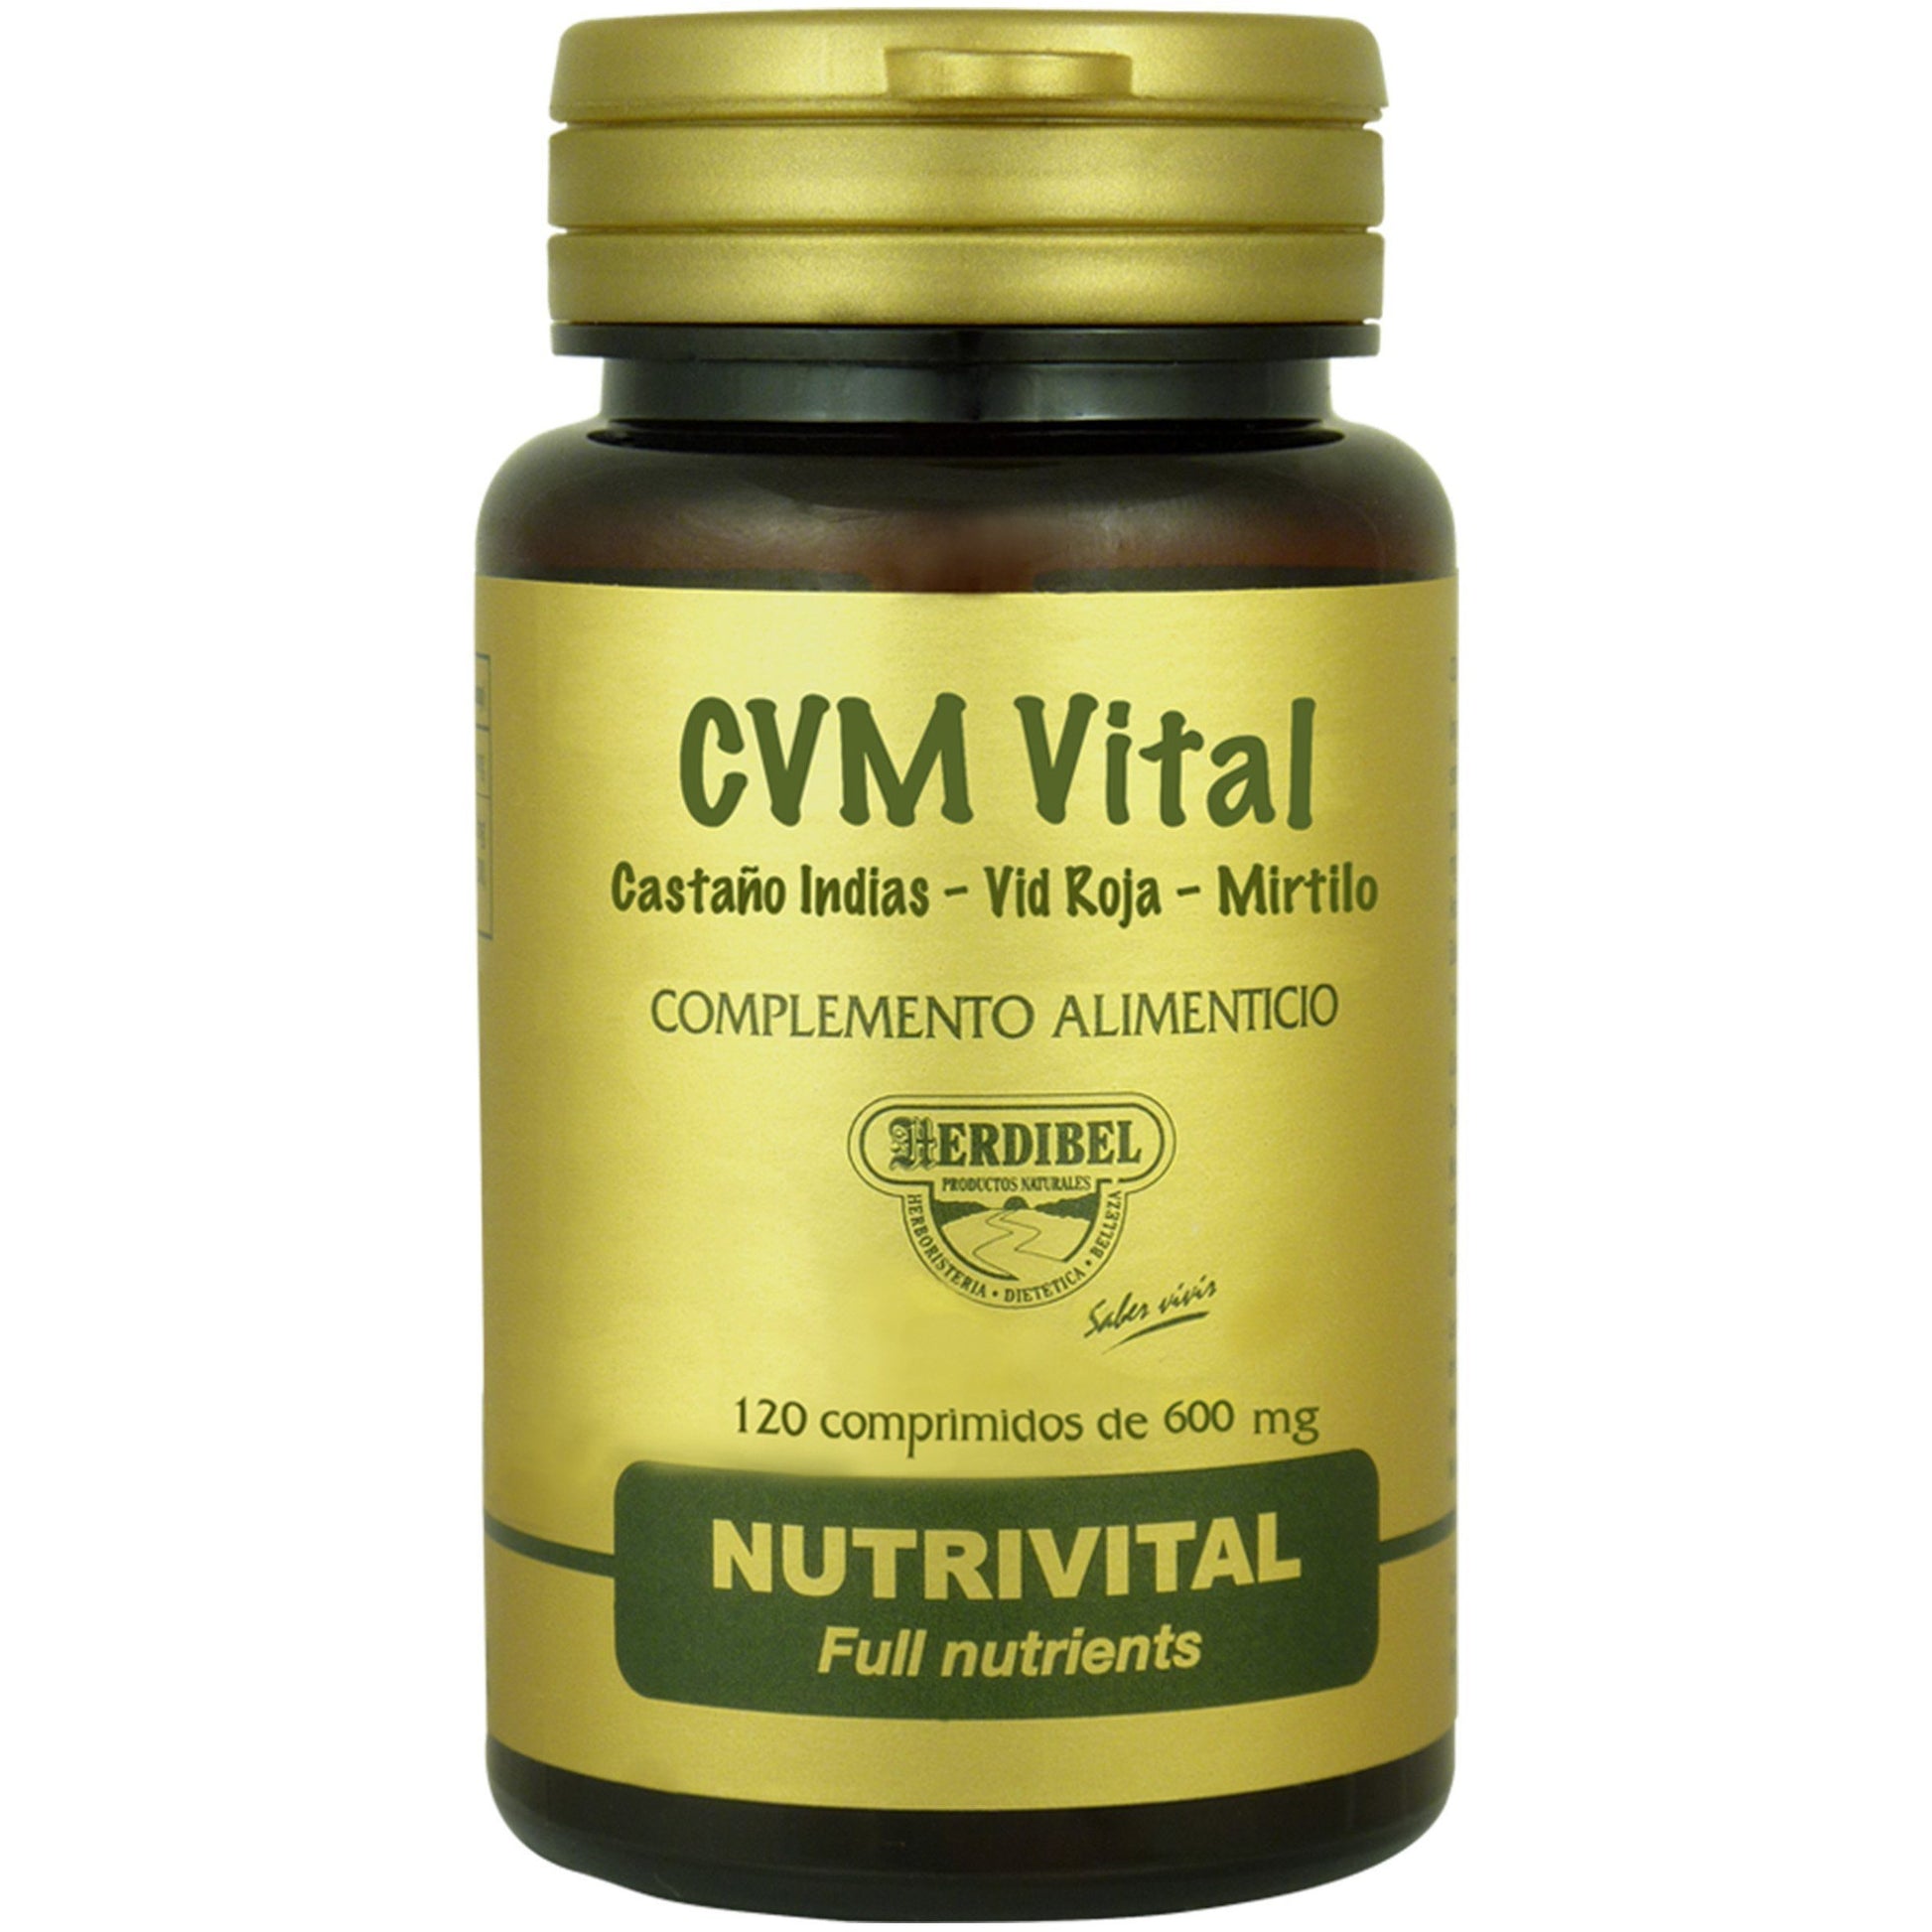 CVM Vital 120 Comprimidos | Herdibel - Dietetica Ferrer